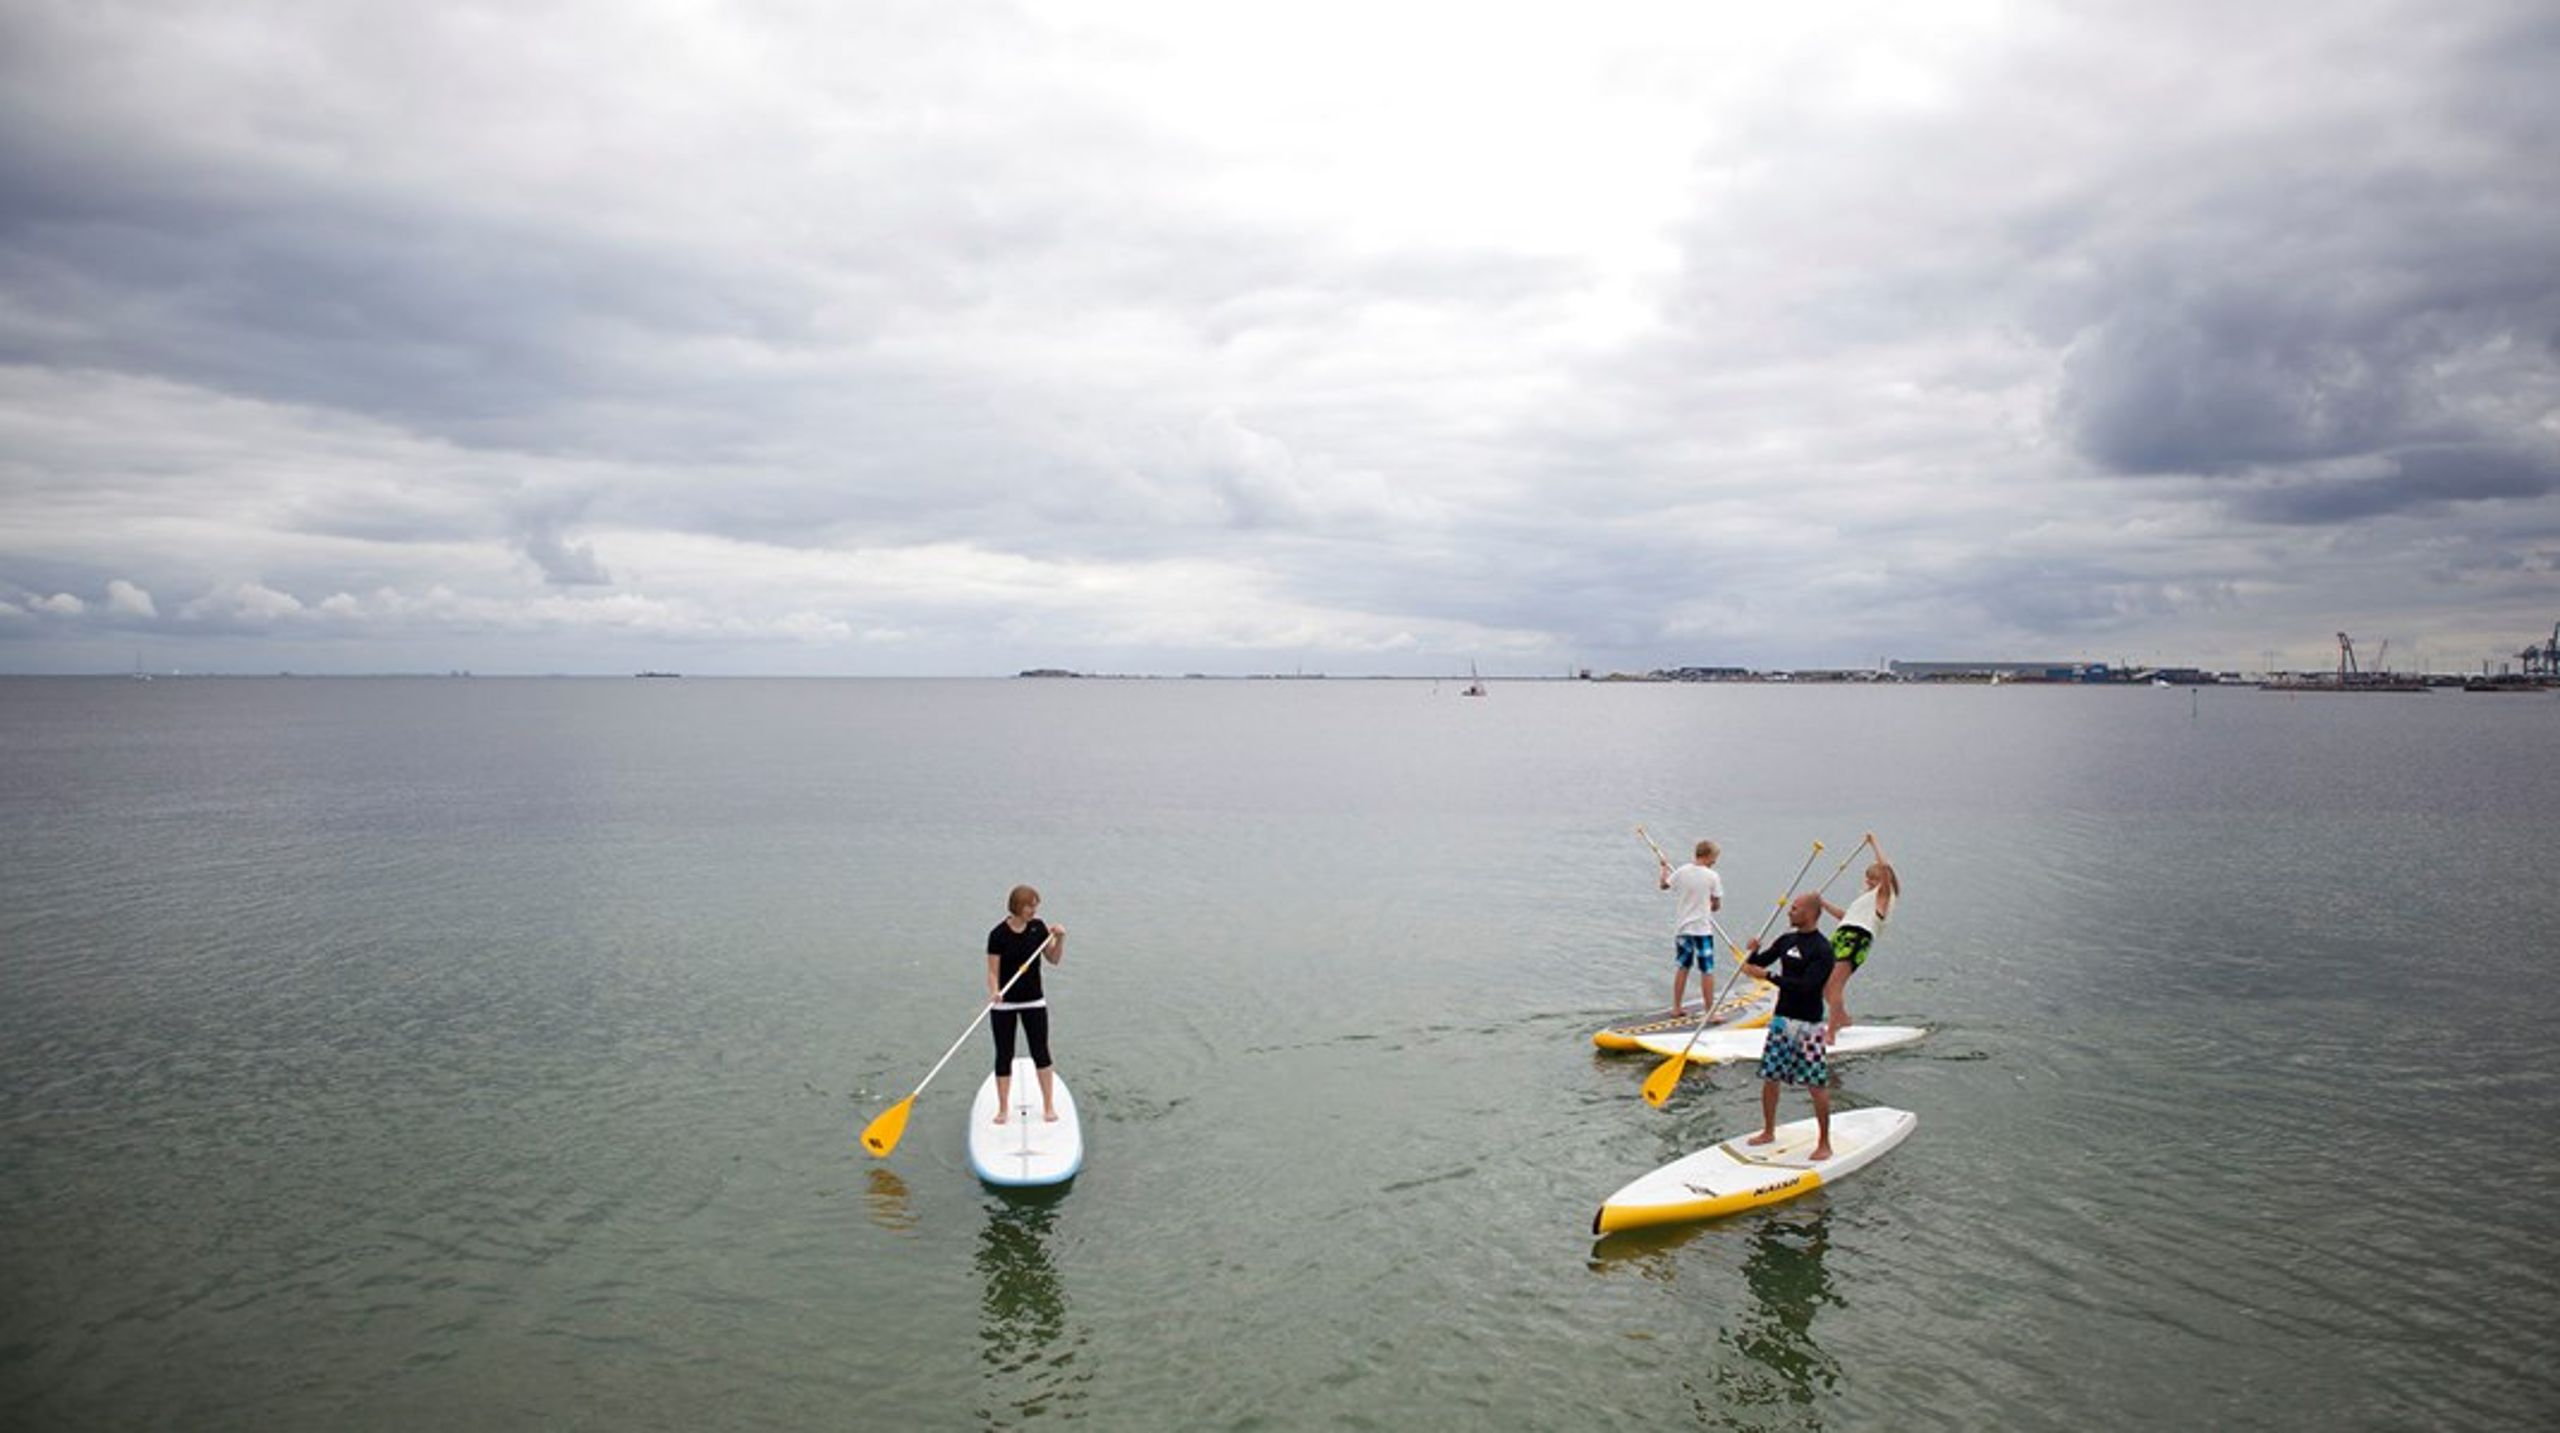 Projektet Shores Langeland skal tilbyde Langelands beboere og gæster alverdens vandaktiviteter, heriblandt 'stand up paddle' (SUP), windsurfing og svømning.